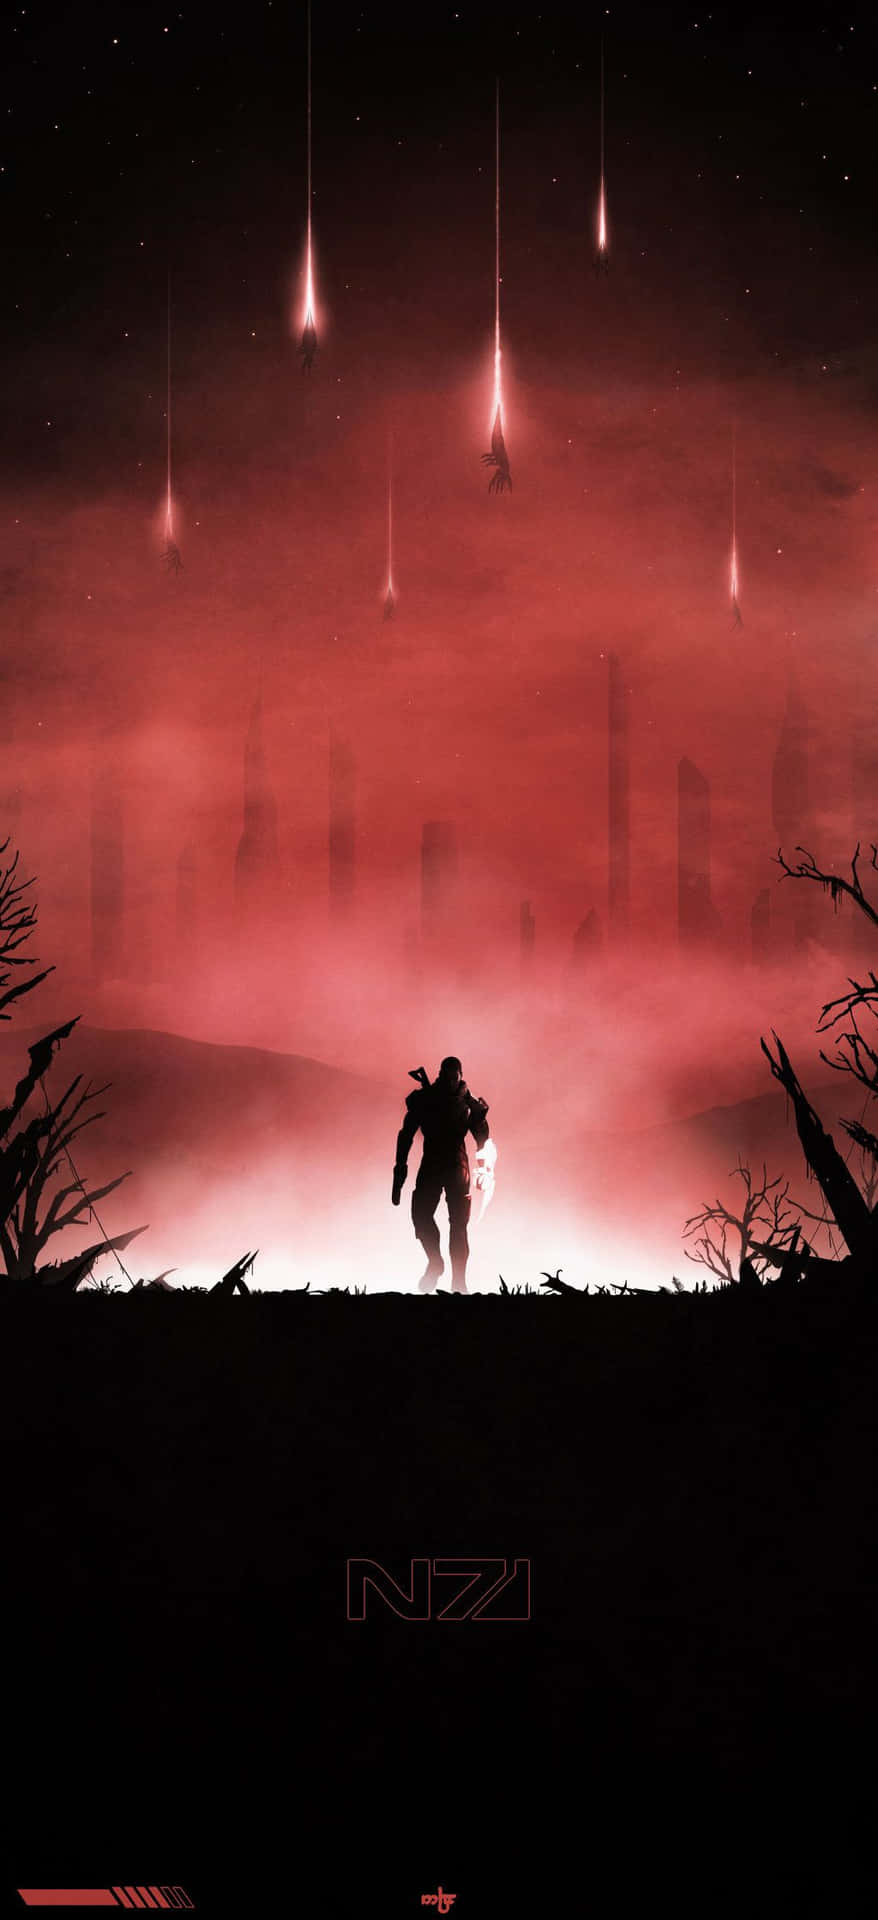 Mass Effect Trilogy 1024 X 2240 Wallpaper Wallpaper